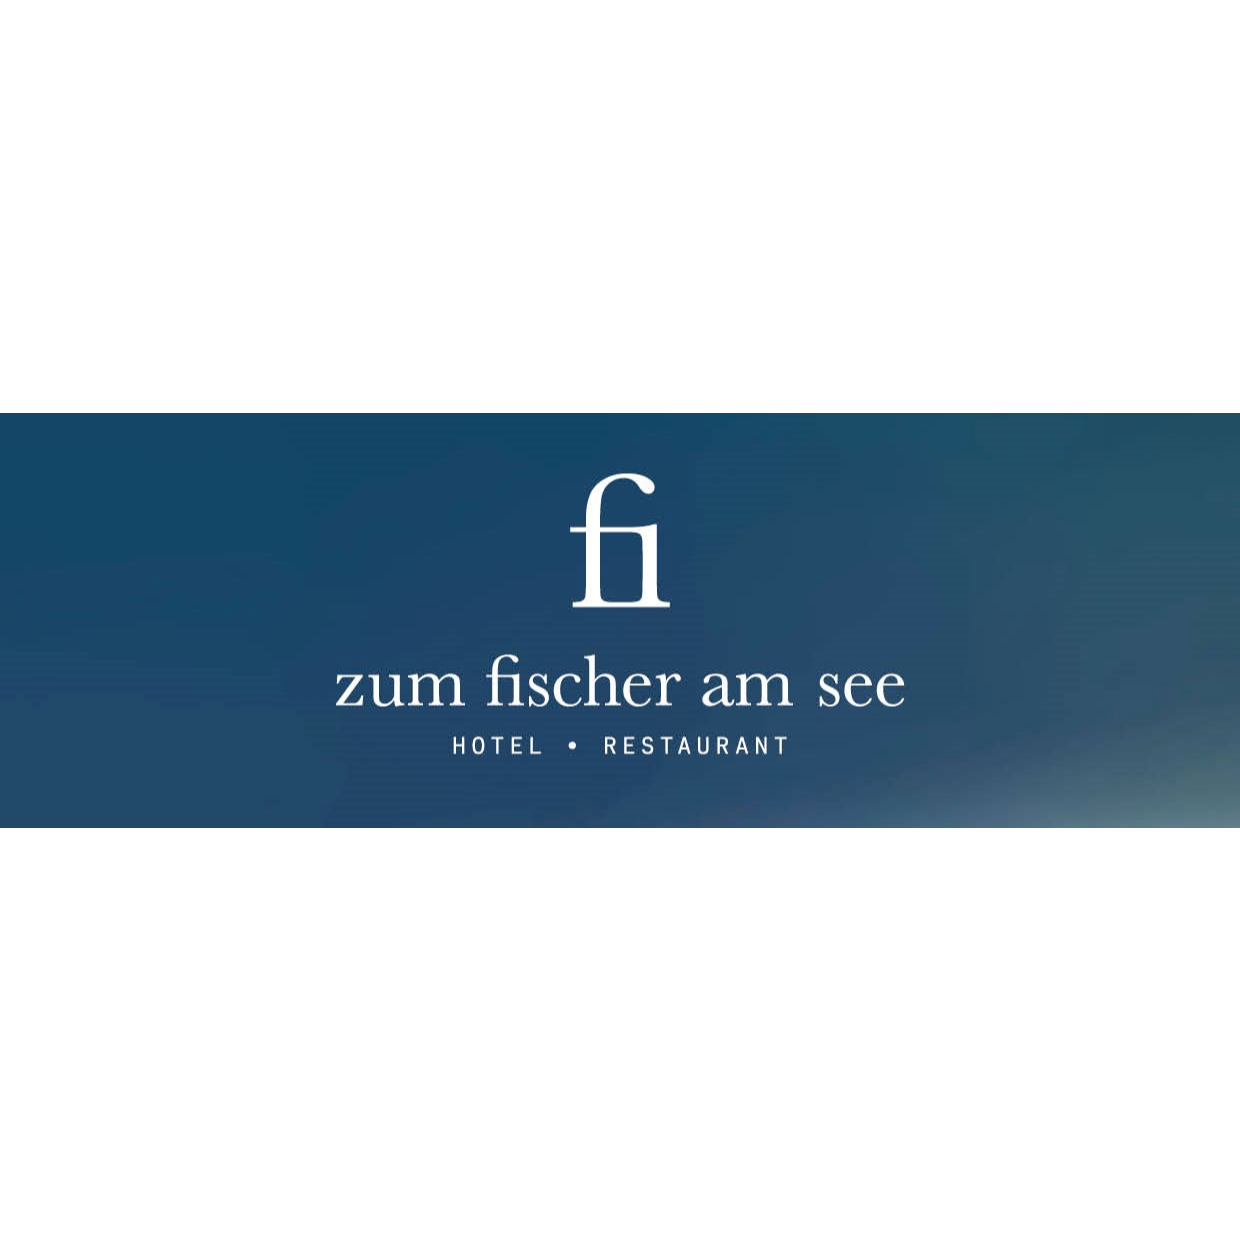 Hotel Restaurant Café Zum Fischer am See in Prien am Chiemsee - Logo